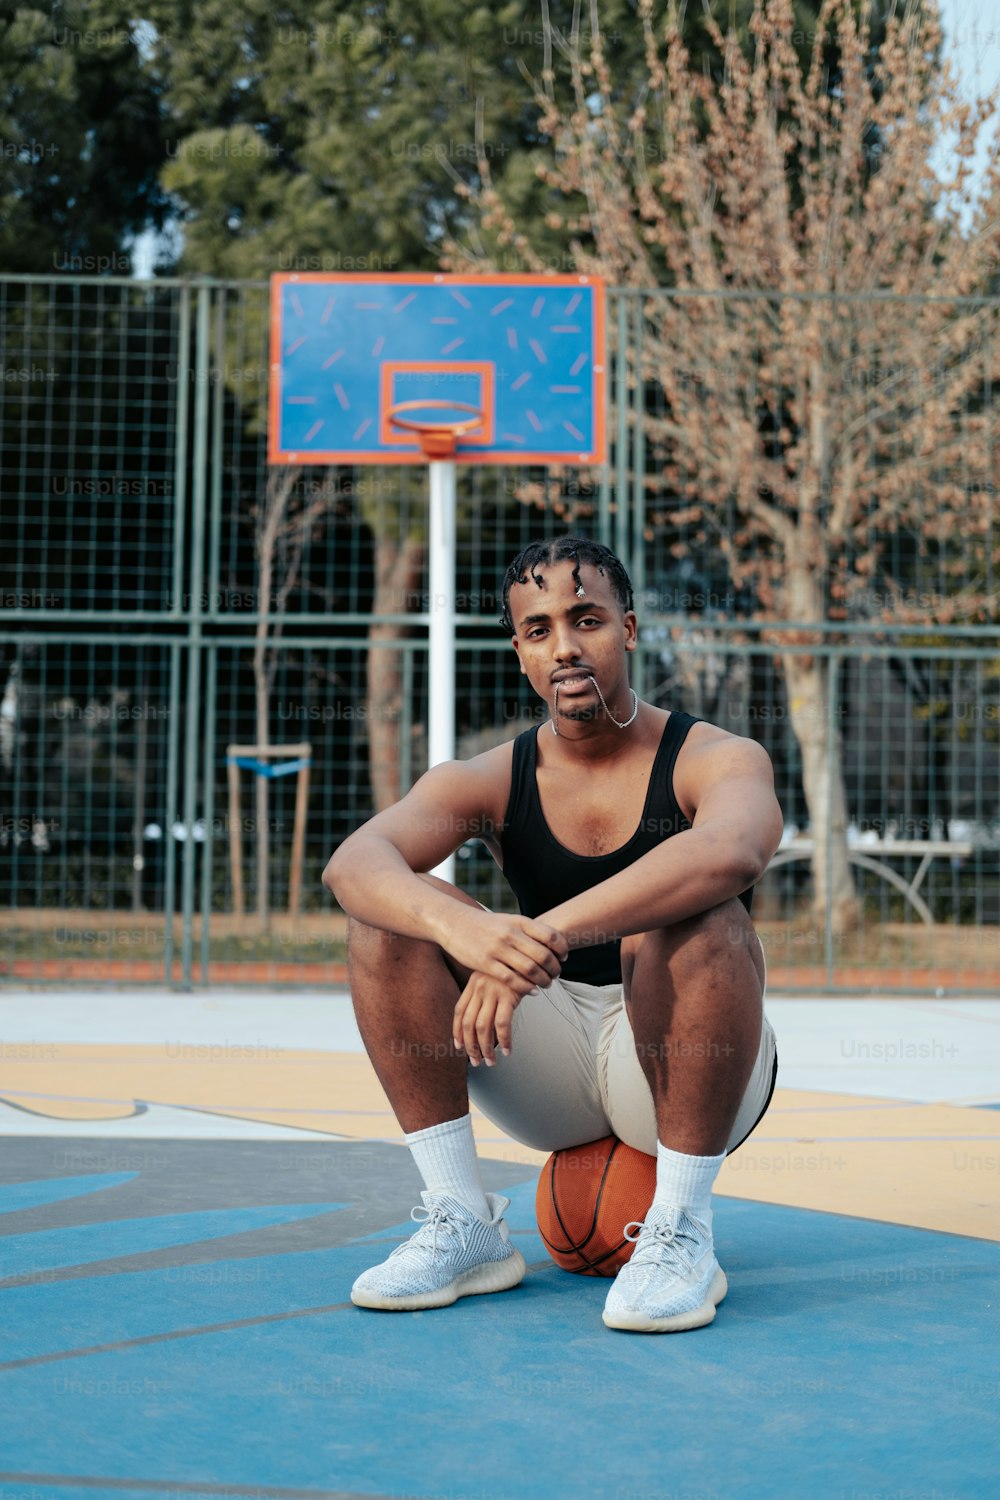 Un uomo seduto su un campo da basket con in mano un pallone da basket